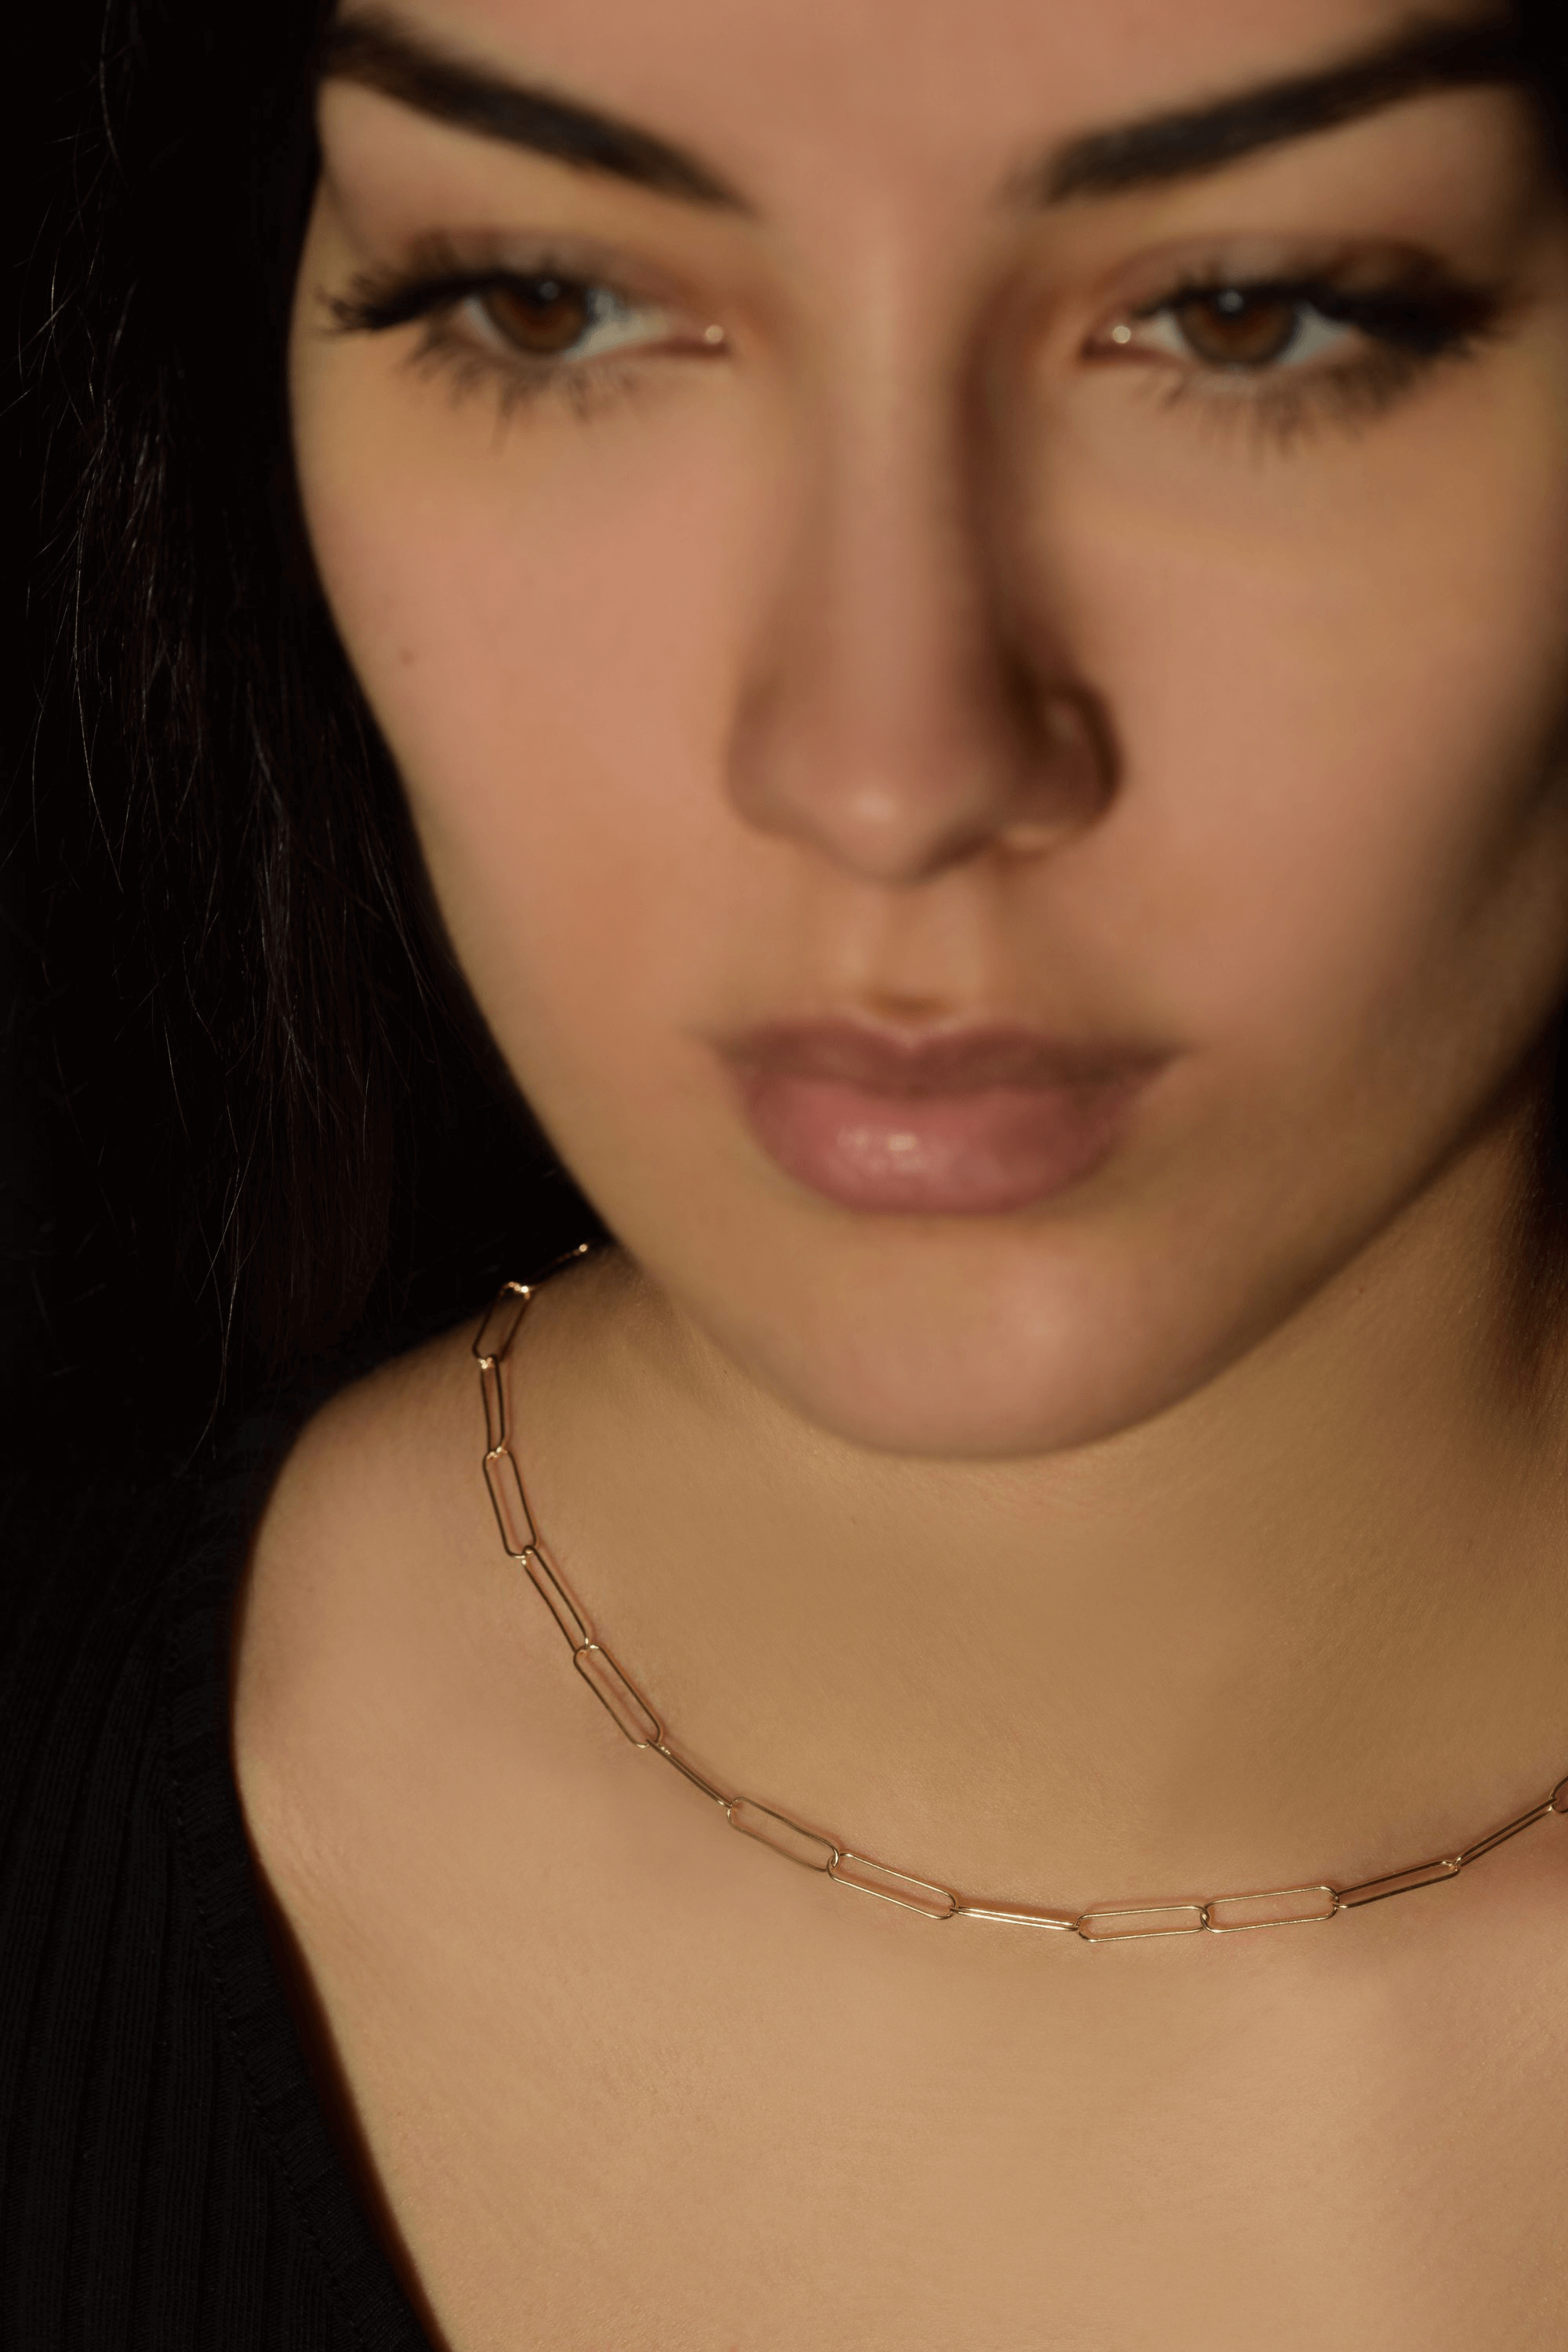 Glieder Kette Silber | 925 er Vergoldet Halskette